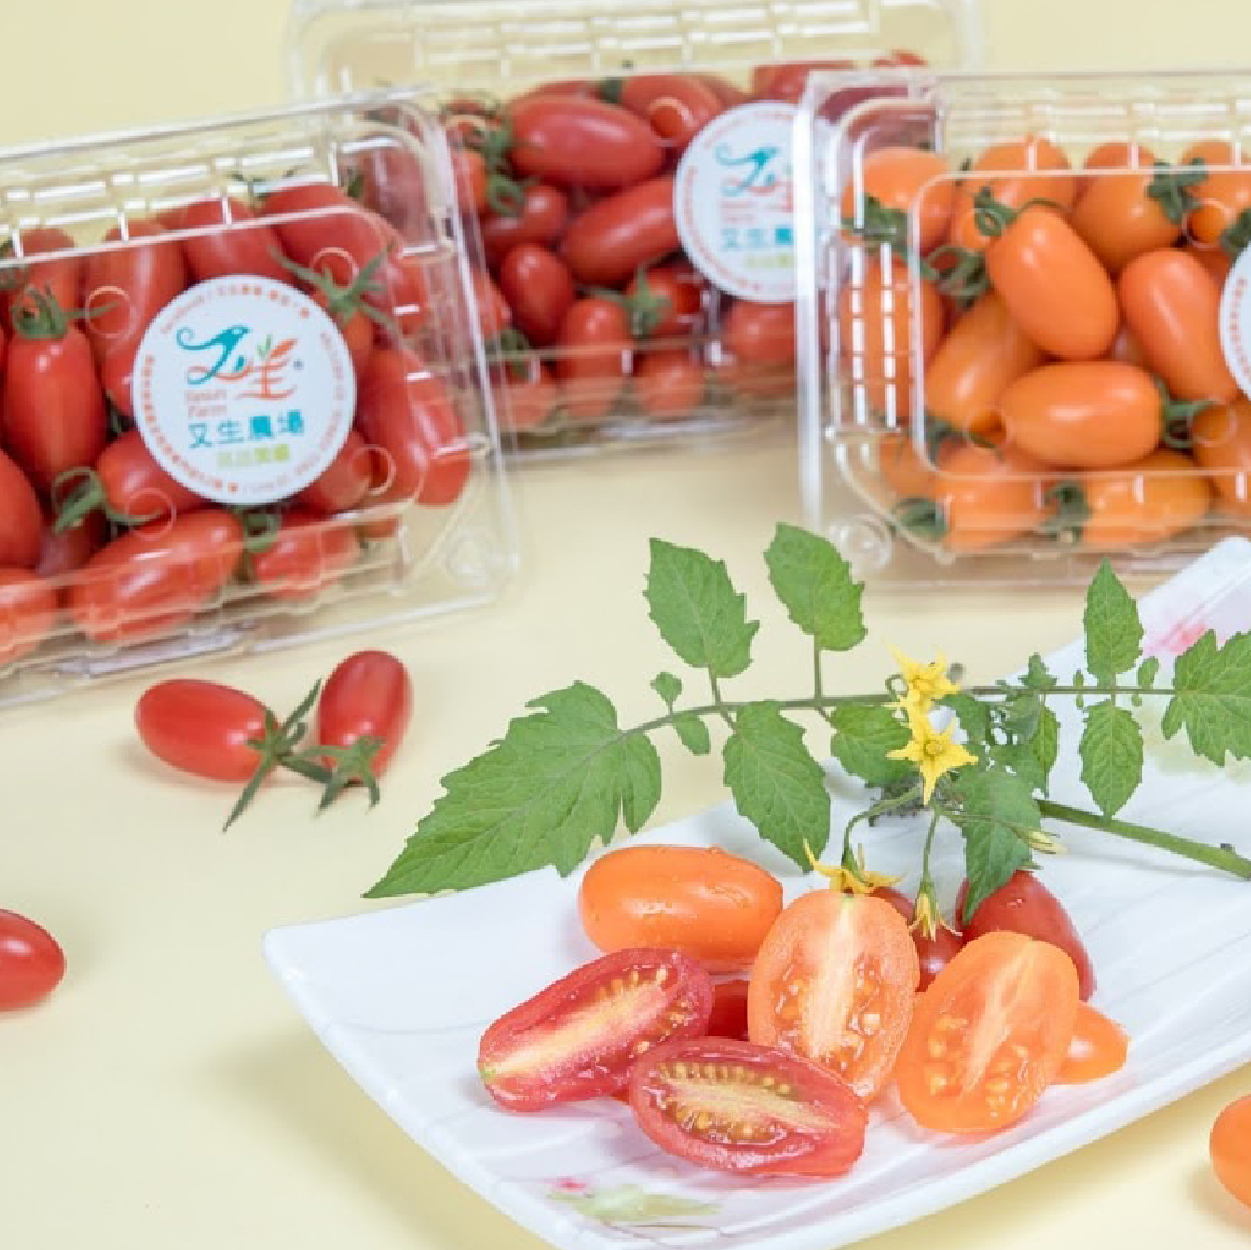 型農大聯盟 番茄雙寶搶鮮體驗 追求果實的原始風味